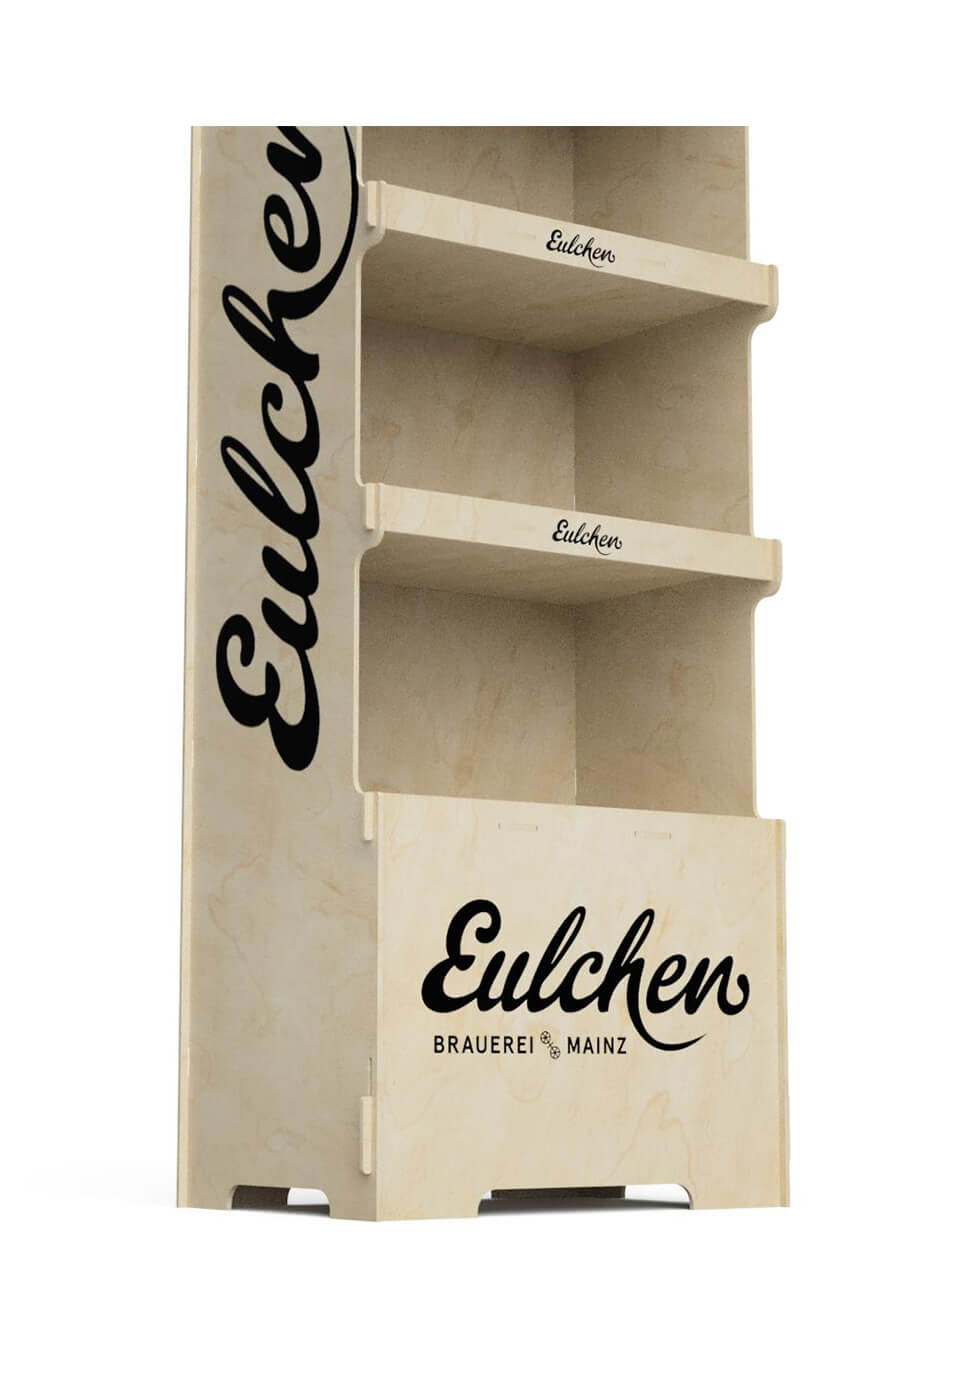 Ekspozytor reklamowy na butelki (soki, piwo, wino, wódka etc.) Eulchen - przykład 1178